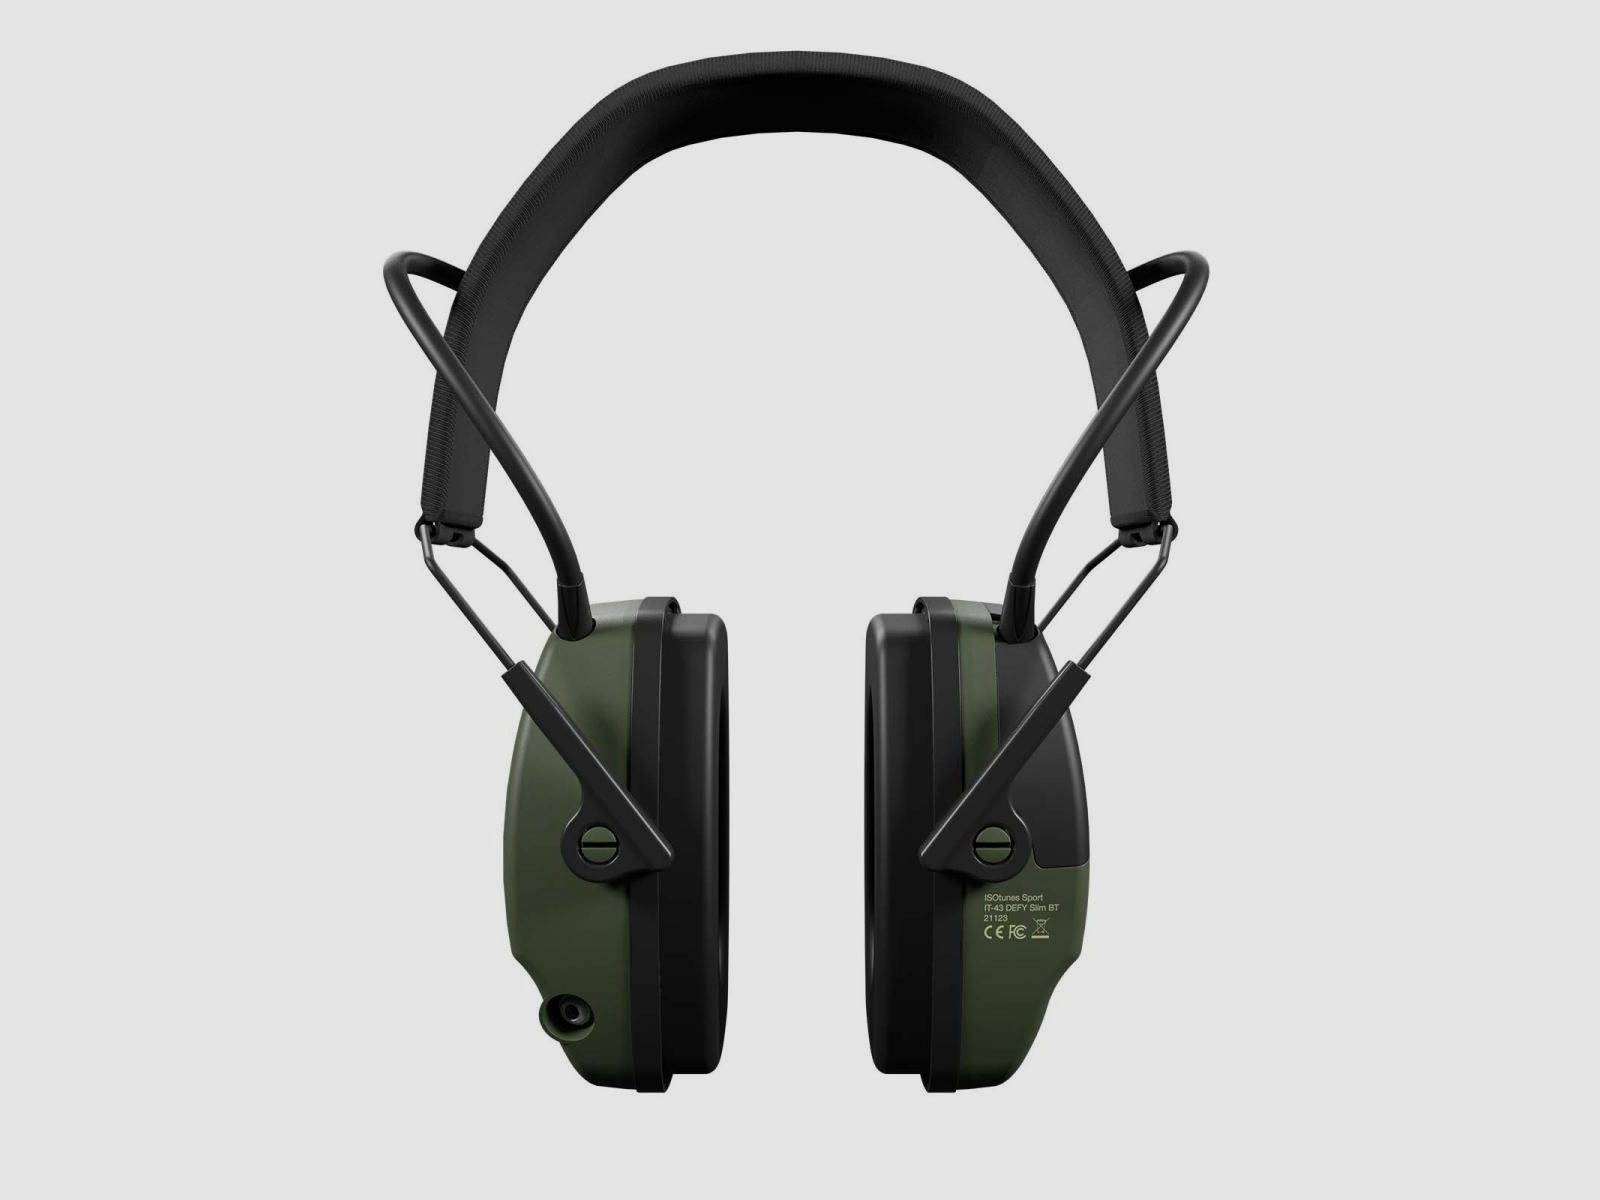 ISOTUNES Sport Defy Slim Gehörschutz mit Bluetooth